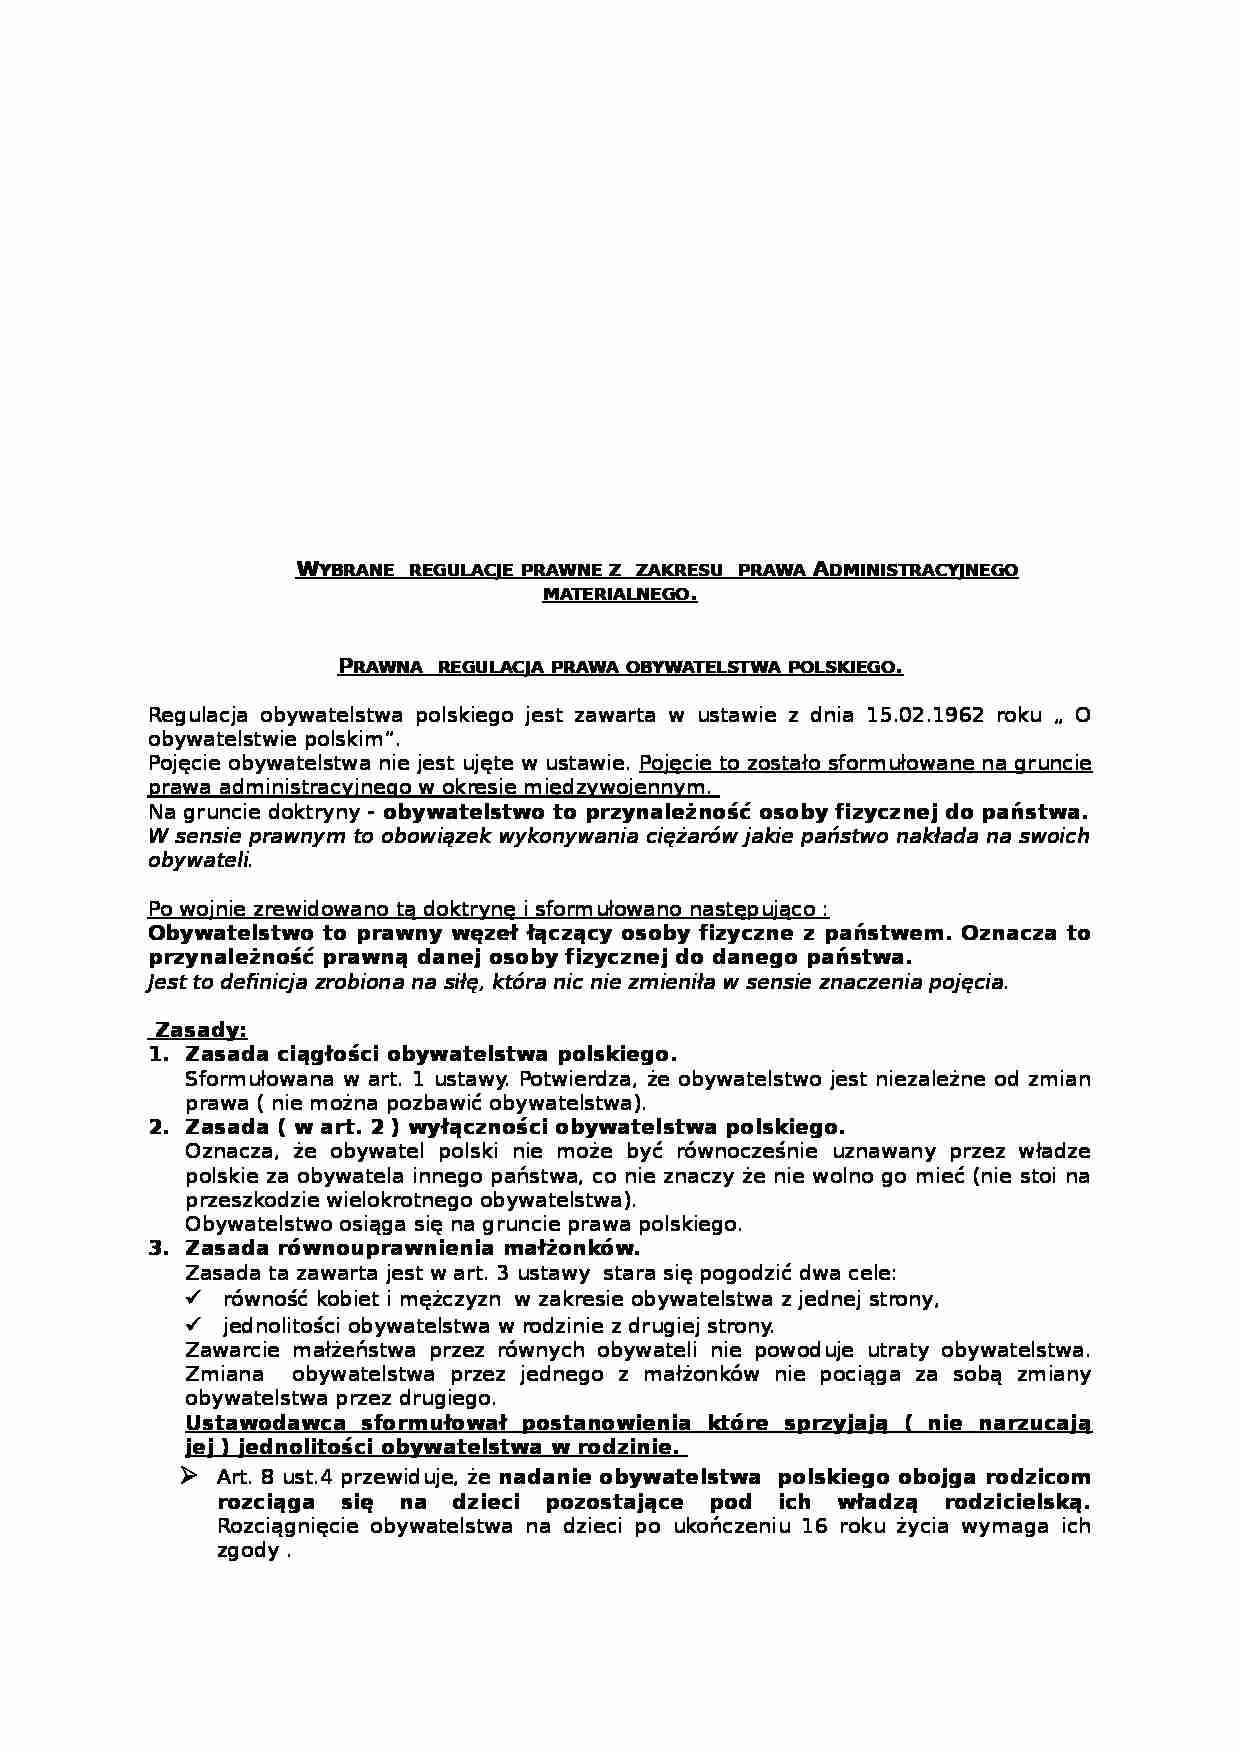 Wybrane regulacje prawne z zakresu prawa Administracyjnego materialnego - strona 1